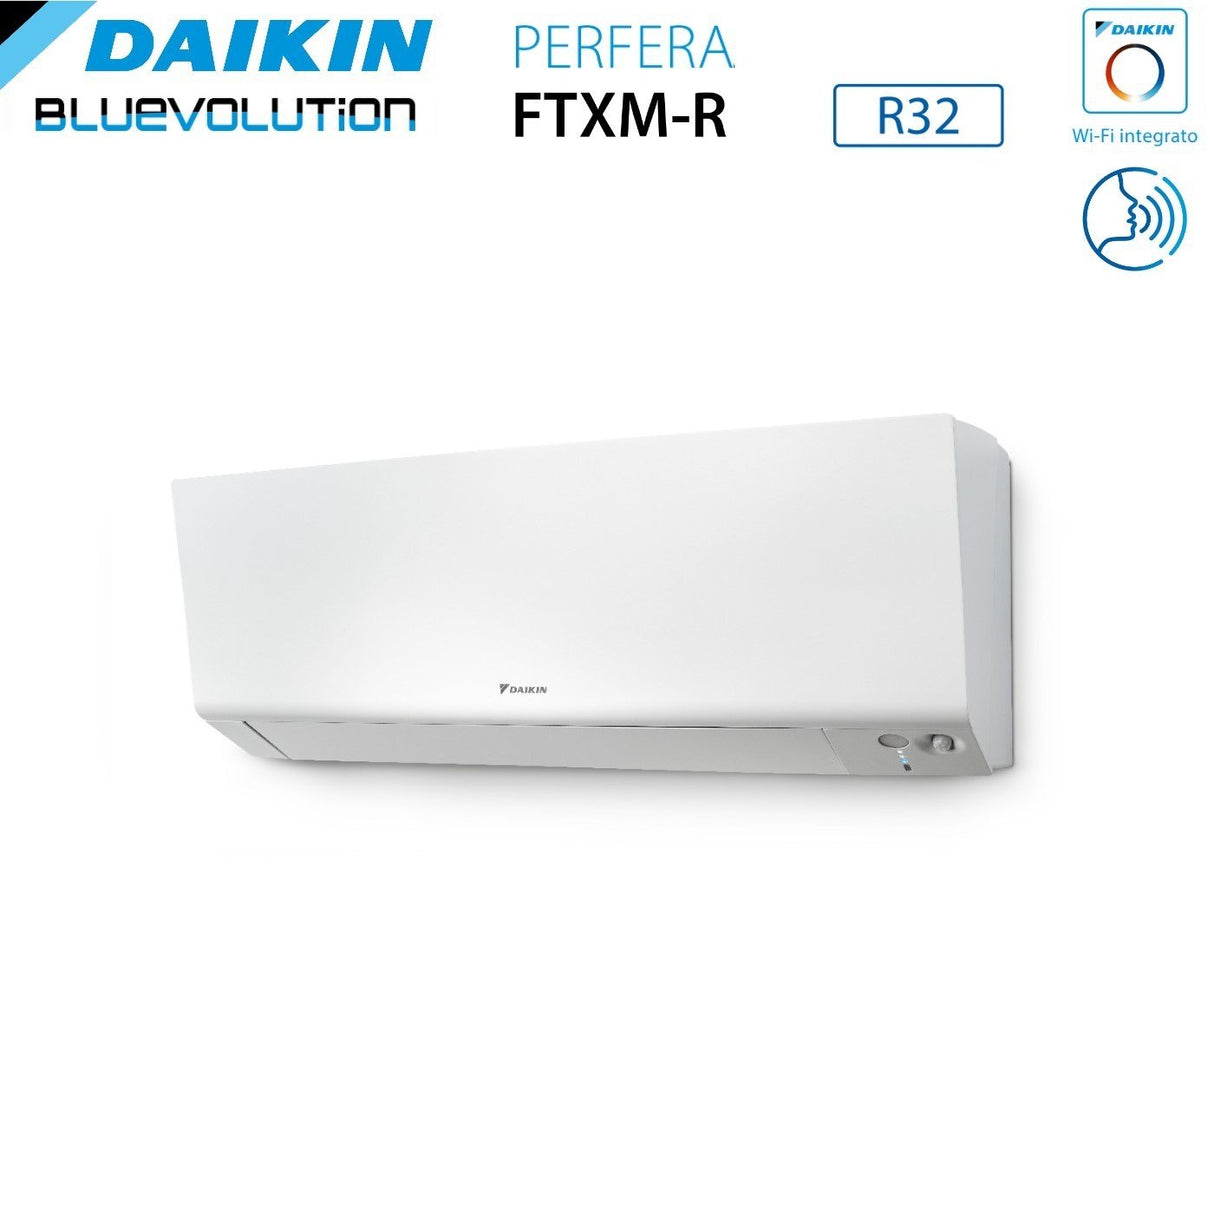 immagine-5-daikin-climatizzatore-condizionatore-daikin-bluevolution-quadri-split-inverter-serie-ftxmr-perfera-wall-791518-con-4mxm80a-r-32-wi-fi-integrato-700090001500018000-garanzia-italiana